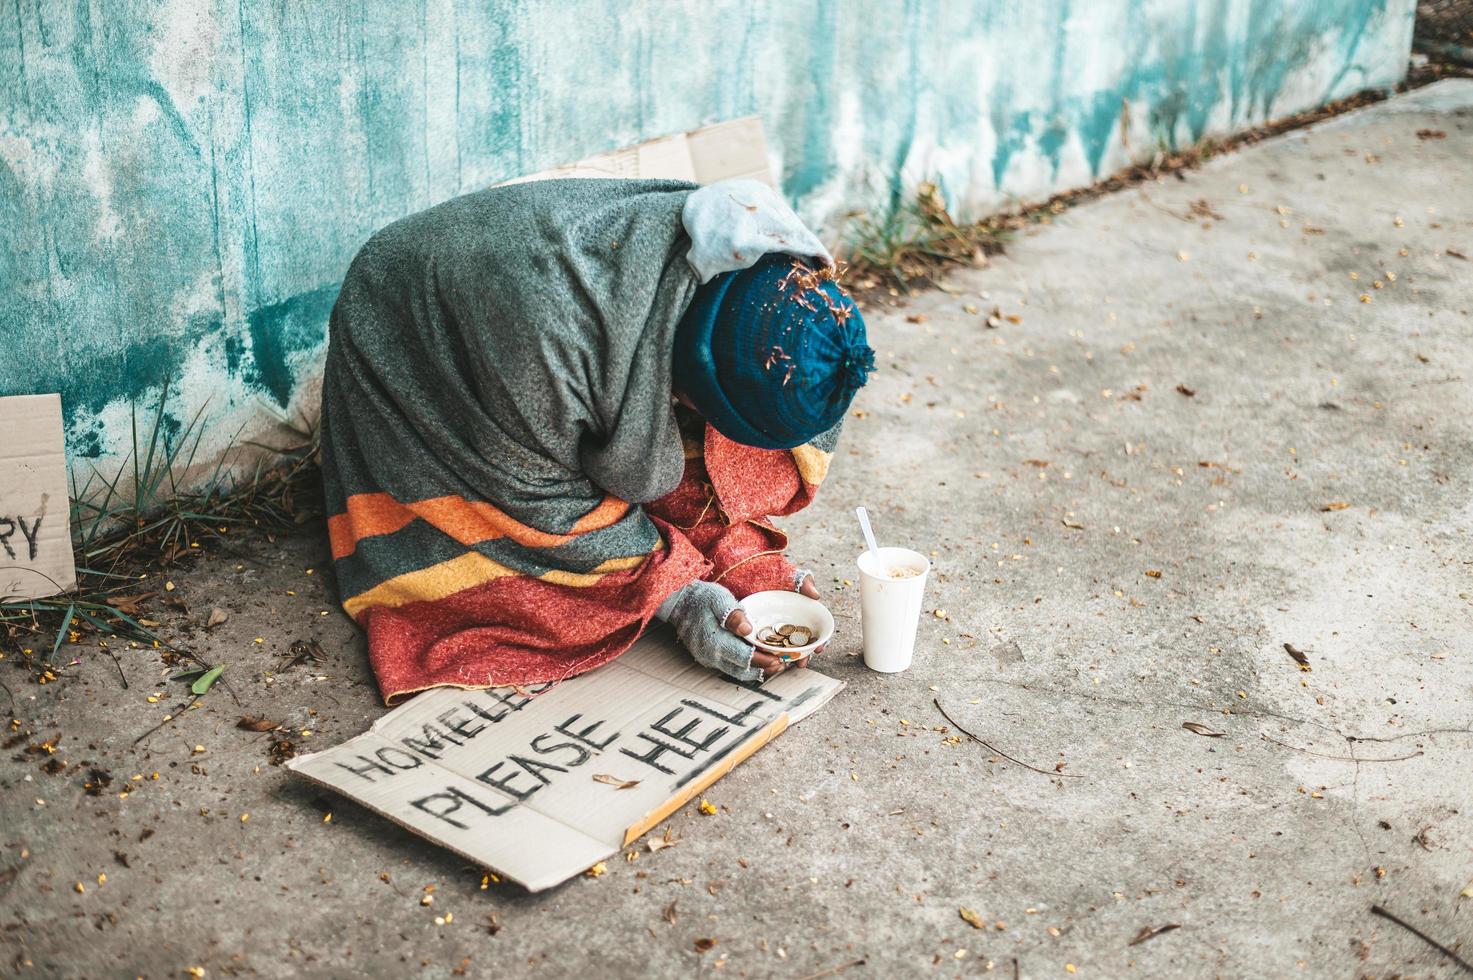 mendigos sentados na rua com mensagens de sem-teto, por favor ajudem. foto